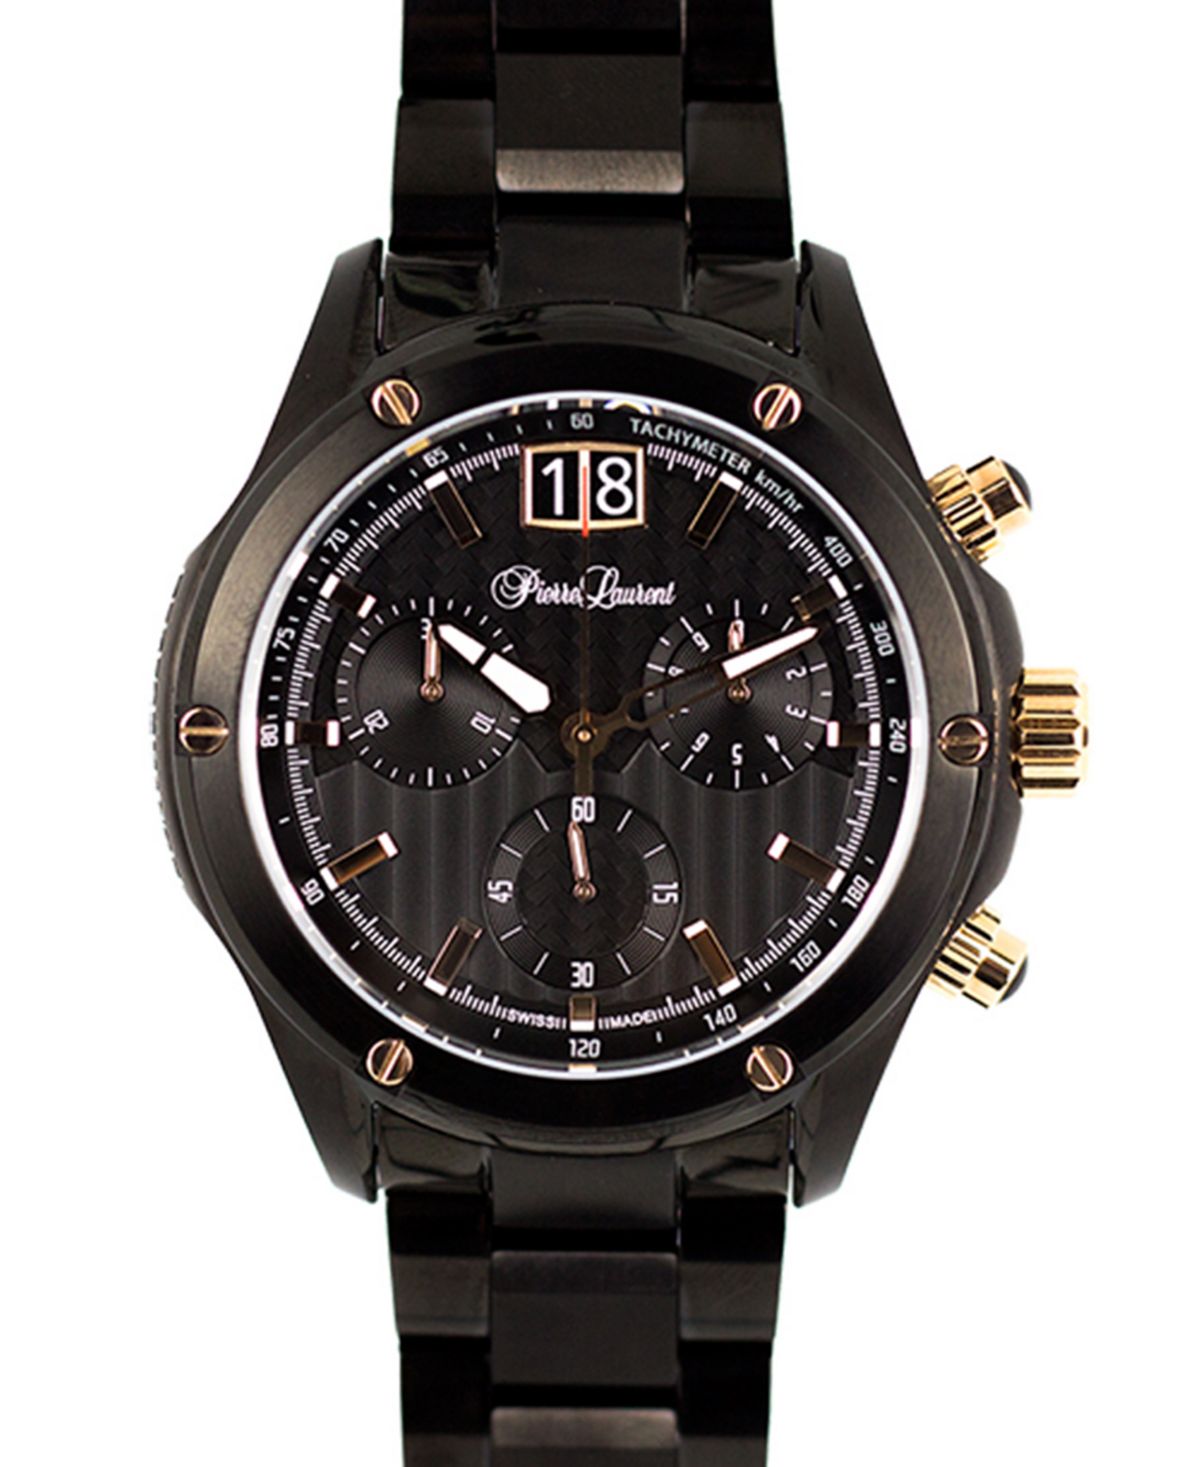 Мужские функциональные швейцарские часы с хронографом и браслетом из нержавеющей стали, 45 мм Pierre Laurent